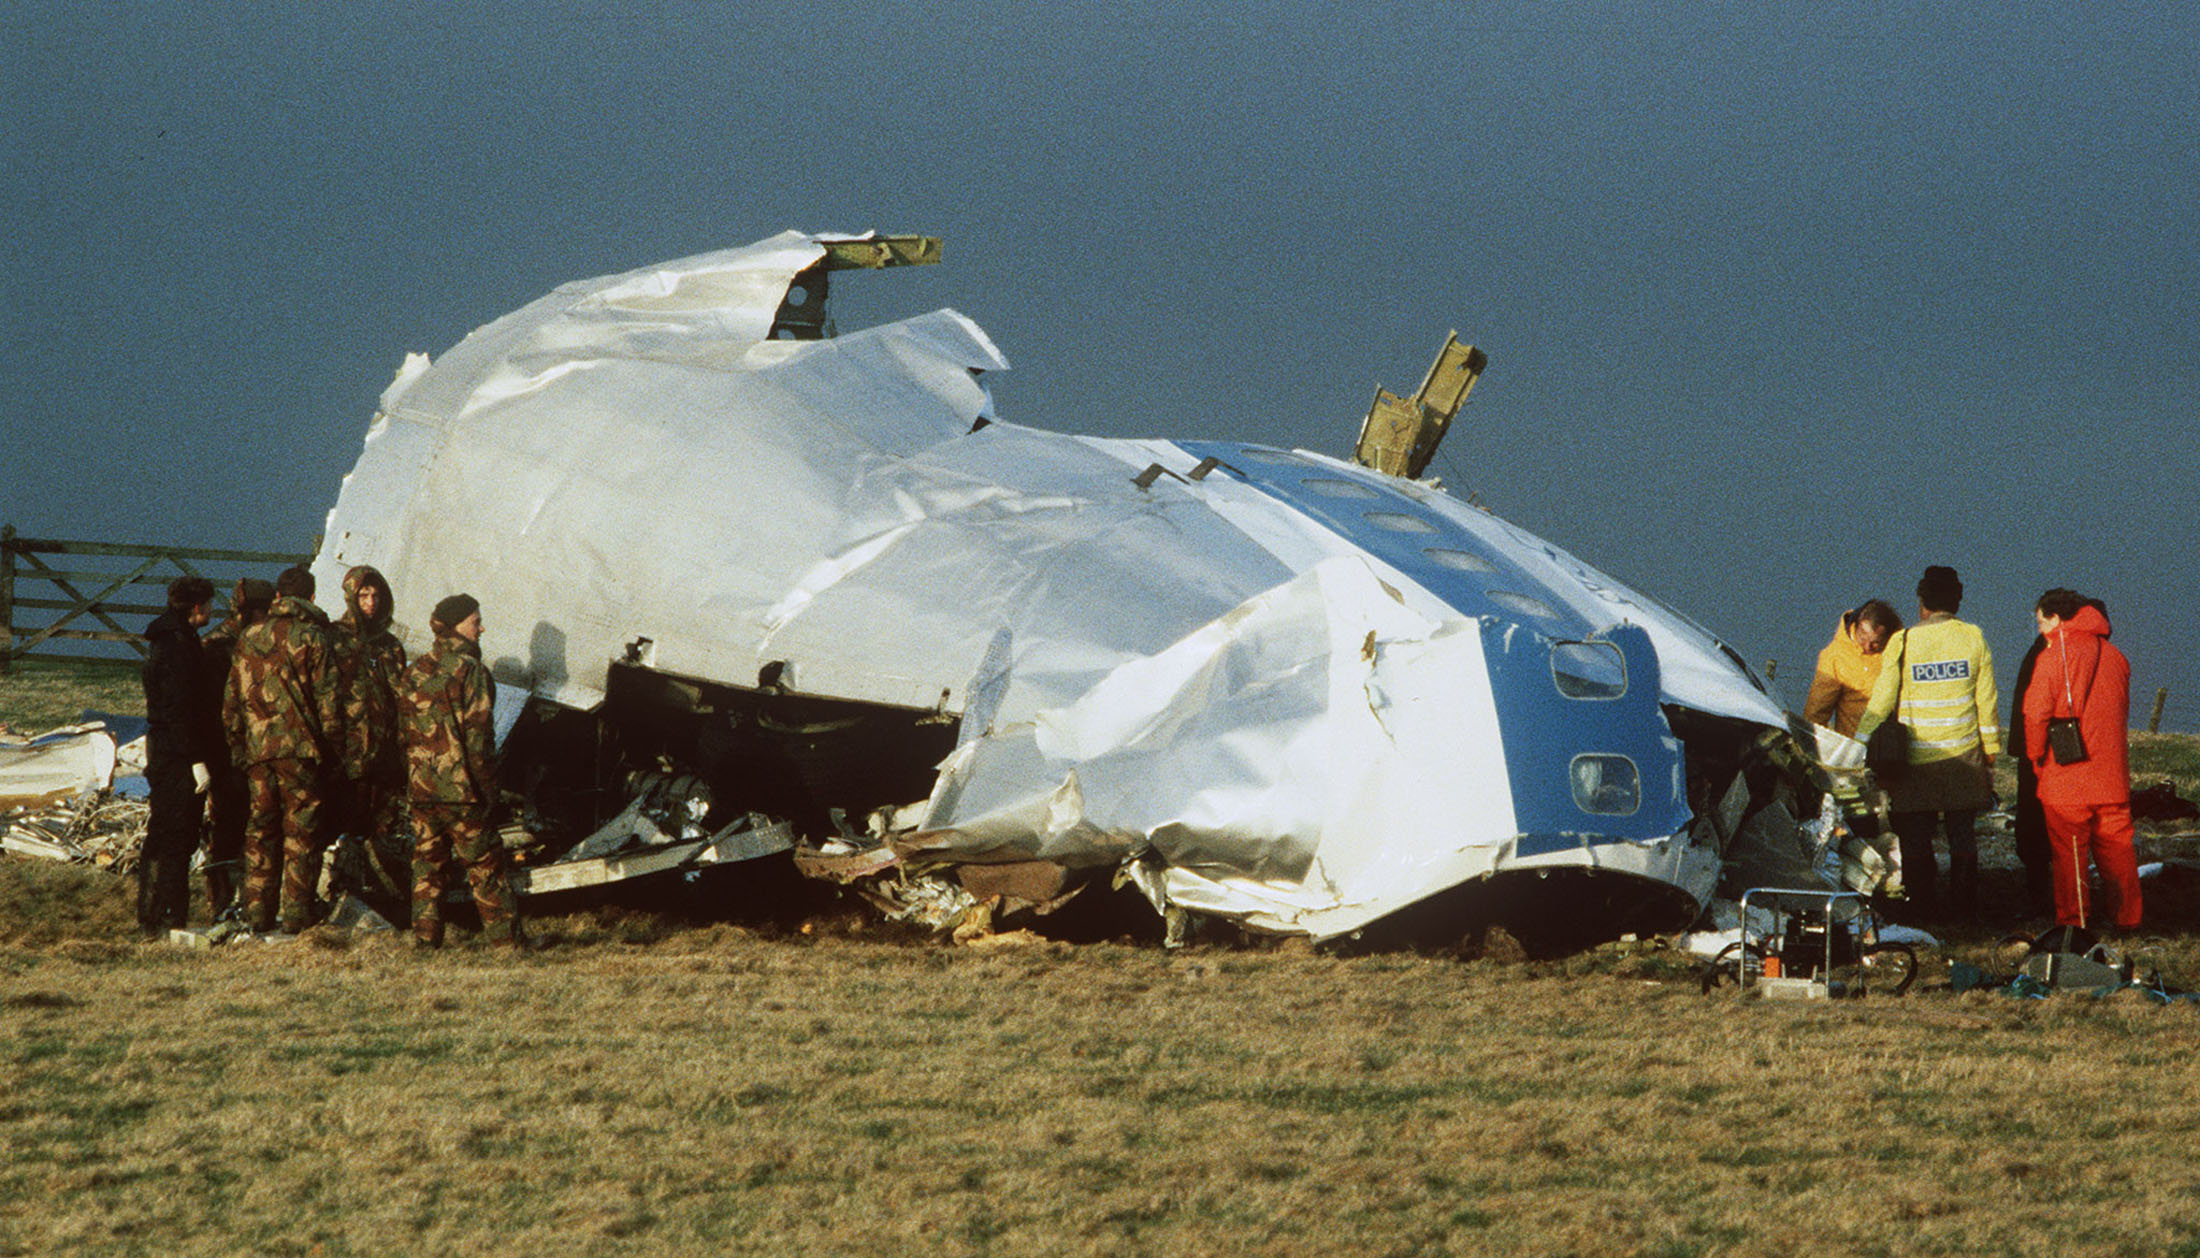 Авиакатастрофы 21. Взрыв Boeing 747 над Локерби. Авиакатастрофы Боинг 747 над Локерби. Катастрофа Боинг 747 над Локерби.